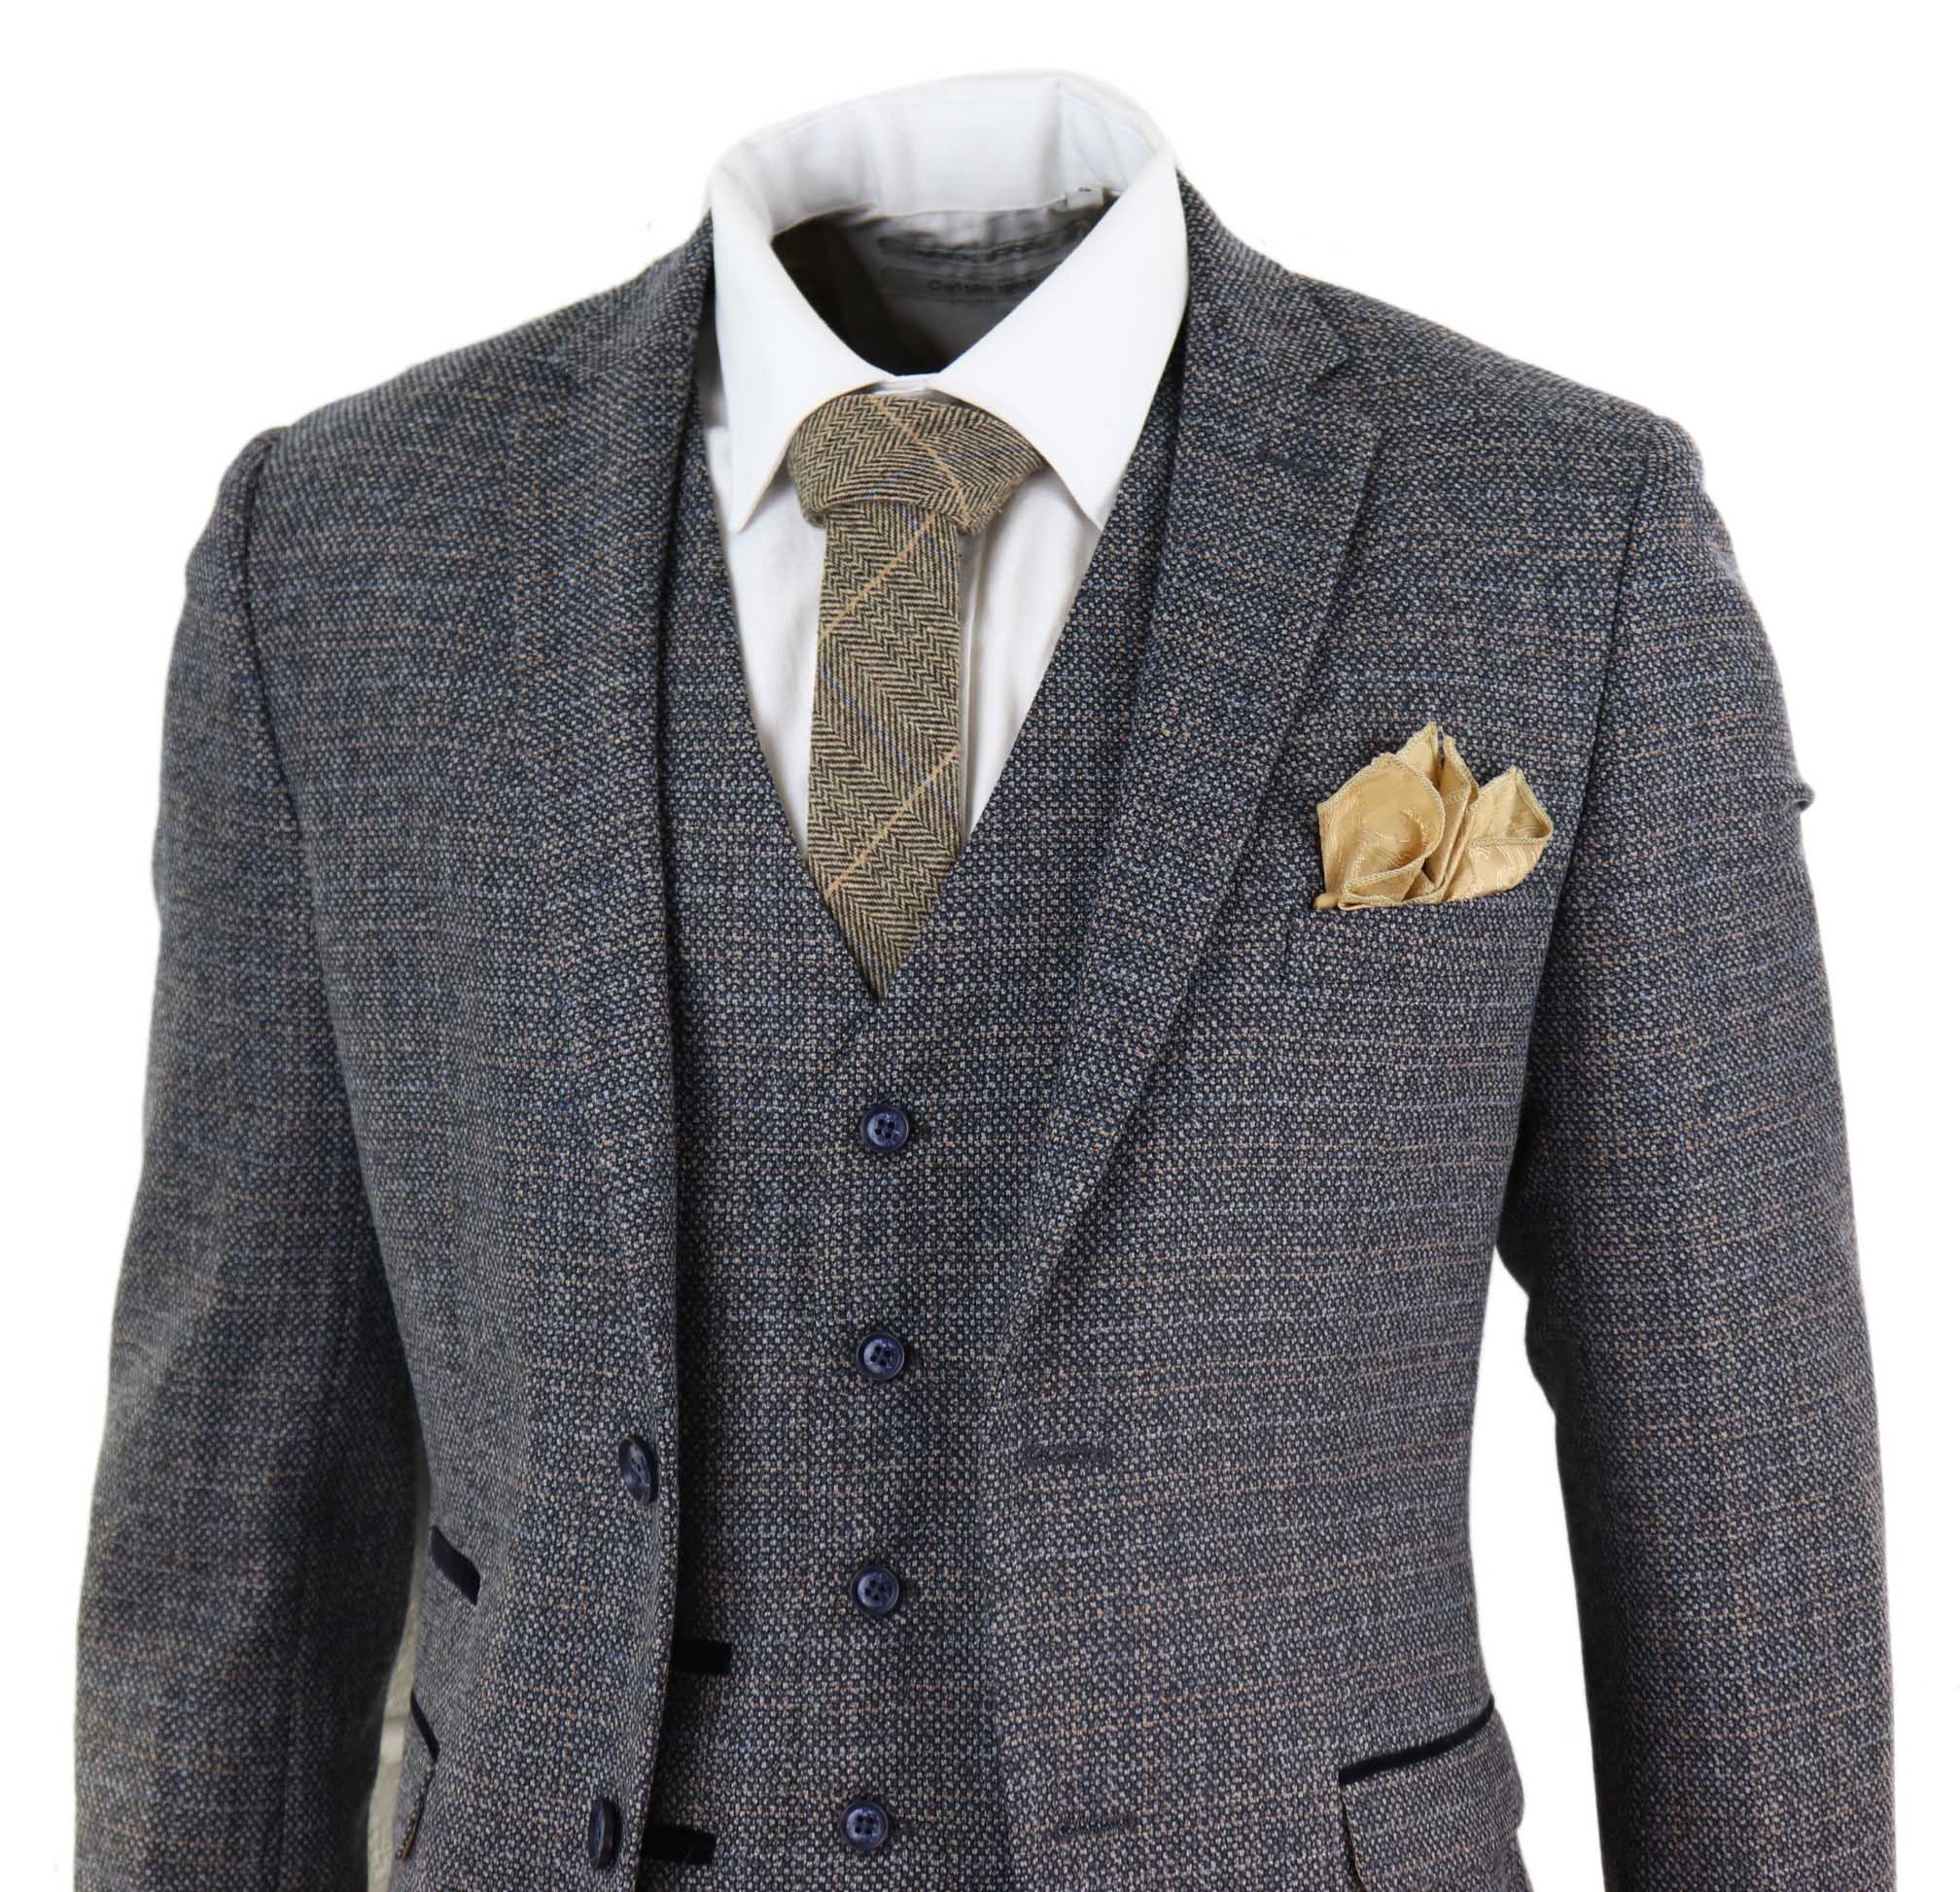 Mens 3 Piece Tweed Check Suit - Navy Blue: Buy Online - Happy Gentleman